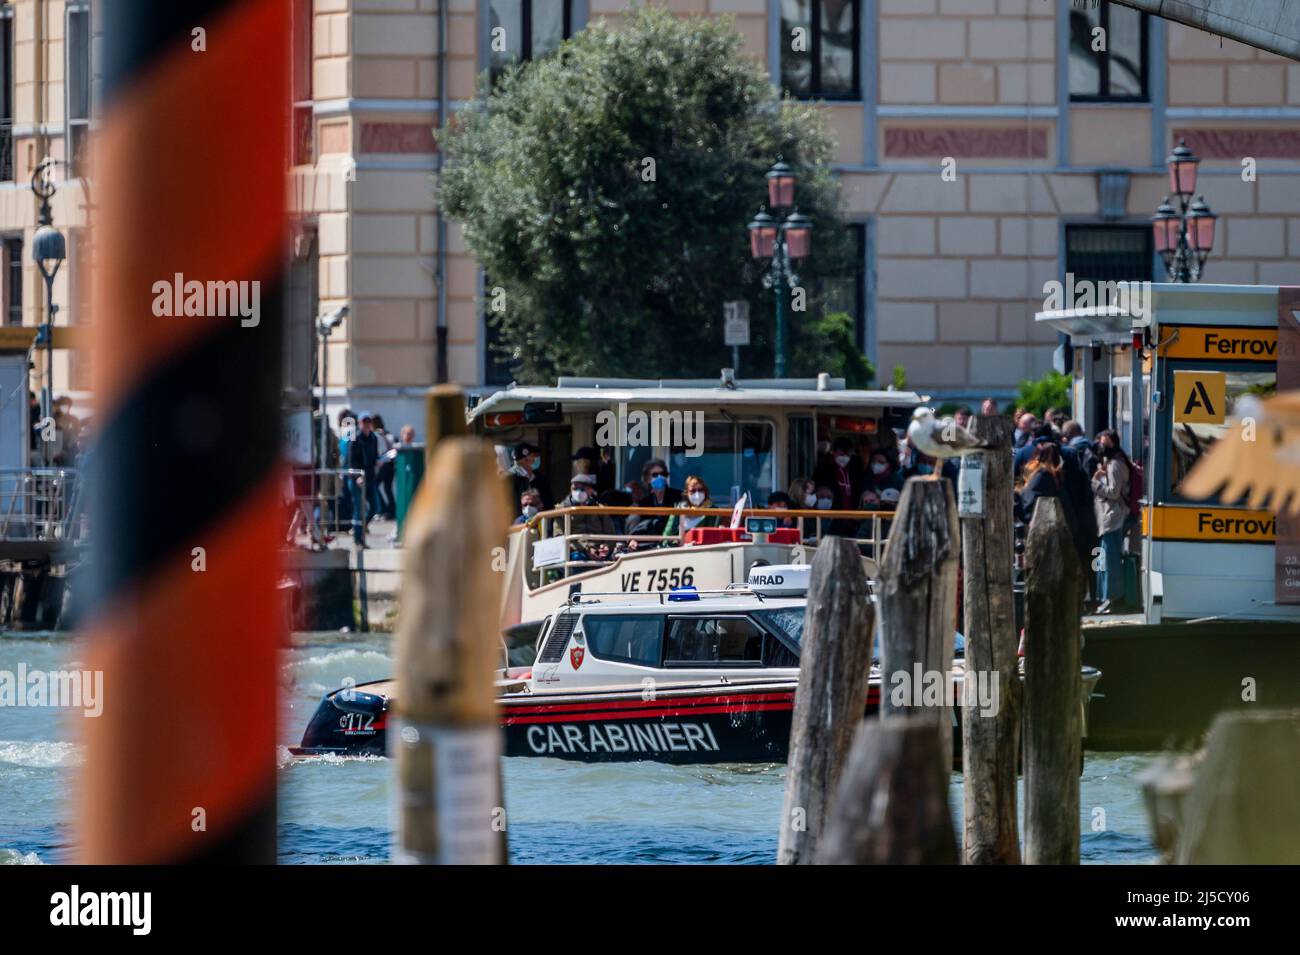 Un bateau Carabinieri se précipite vers un incident à la gare principale - les canaux sont les artères principales portant toutes les formes de transport d'eau - Venise au début de la Biennale di Venezia en 2022. Banque D'Images